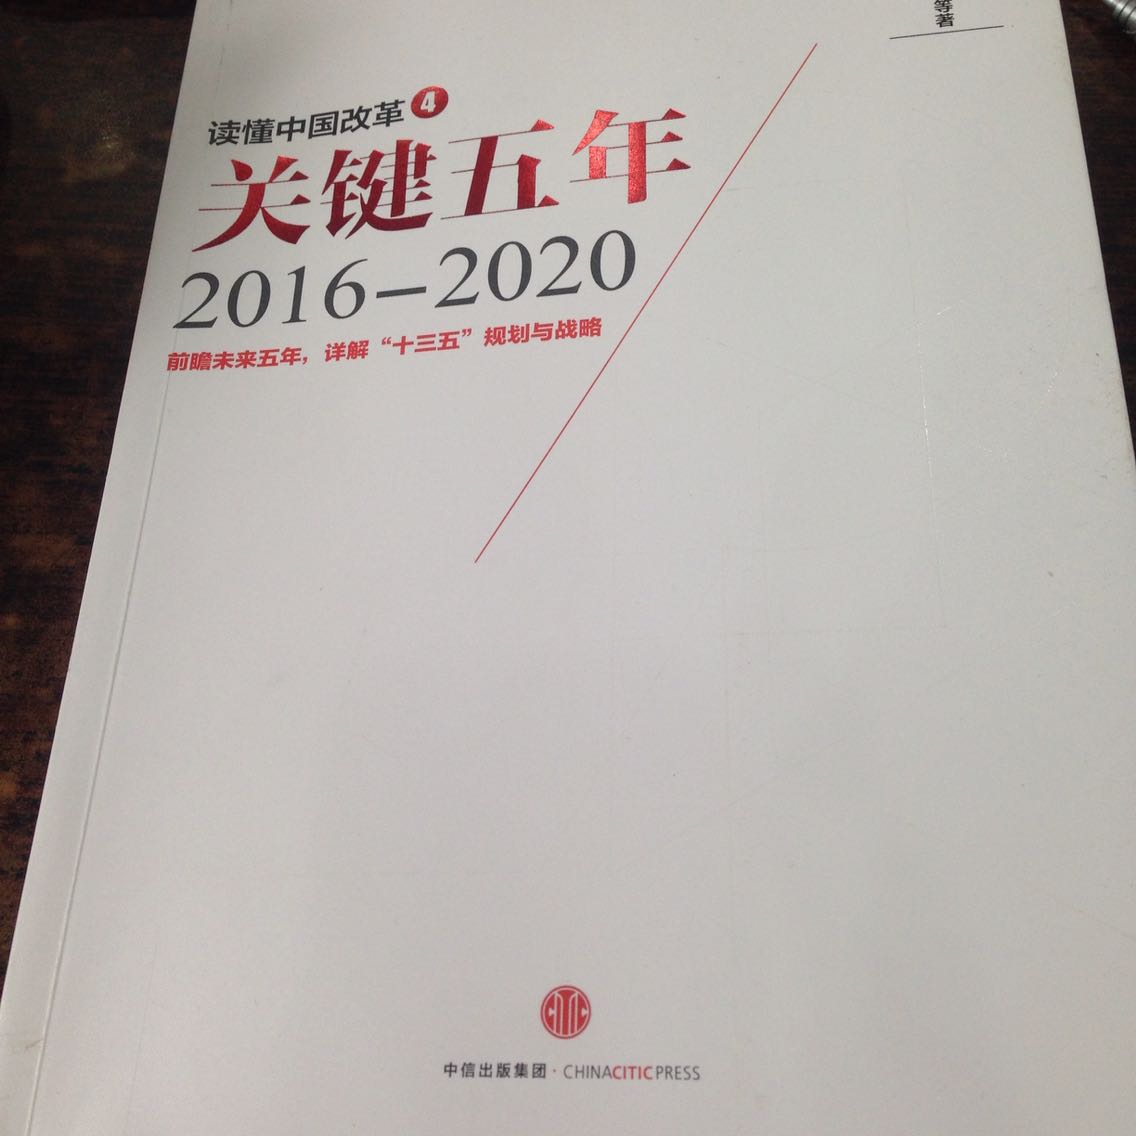 这书还可以，读一读对中国当前的经济形势和改革方向会有一定的了解。